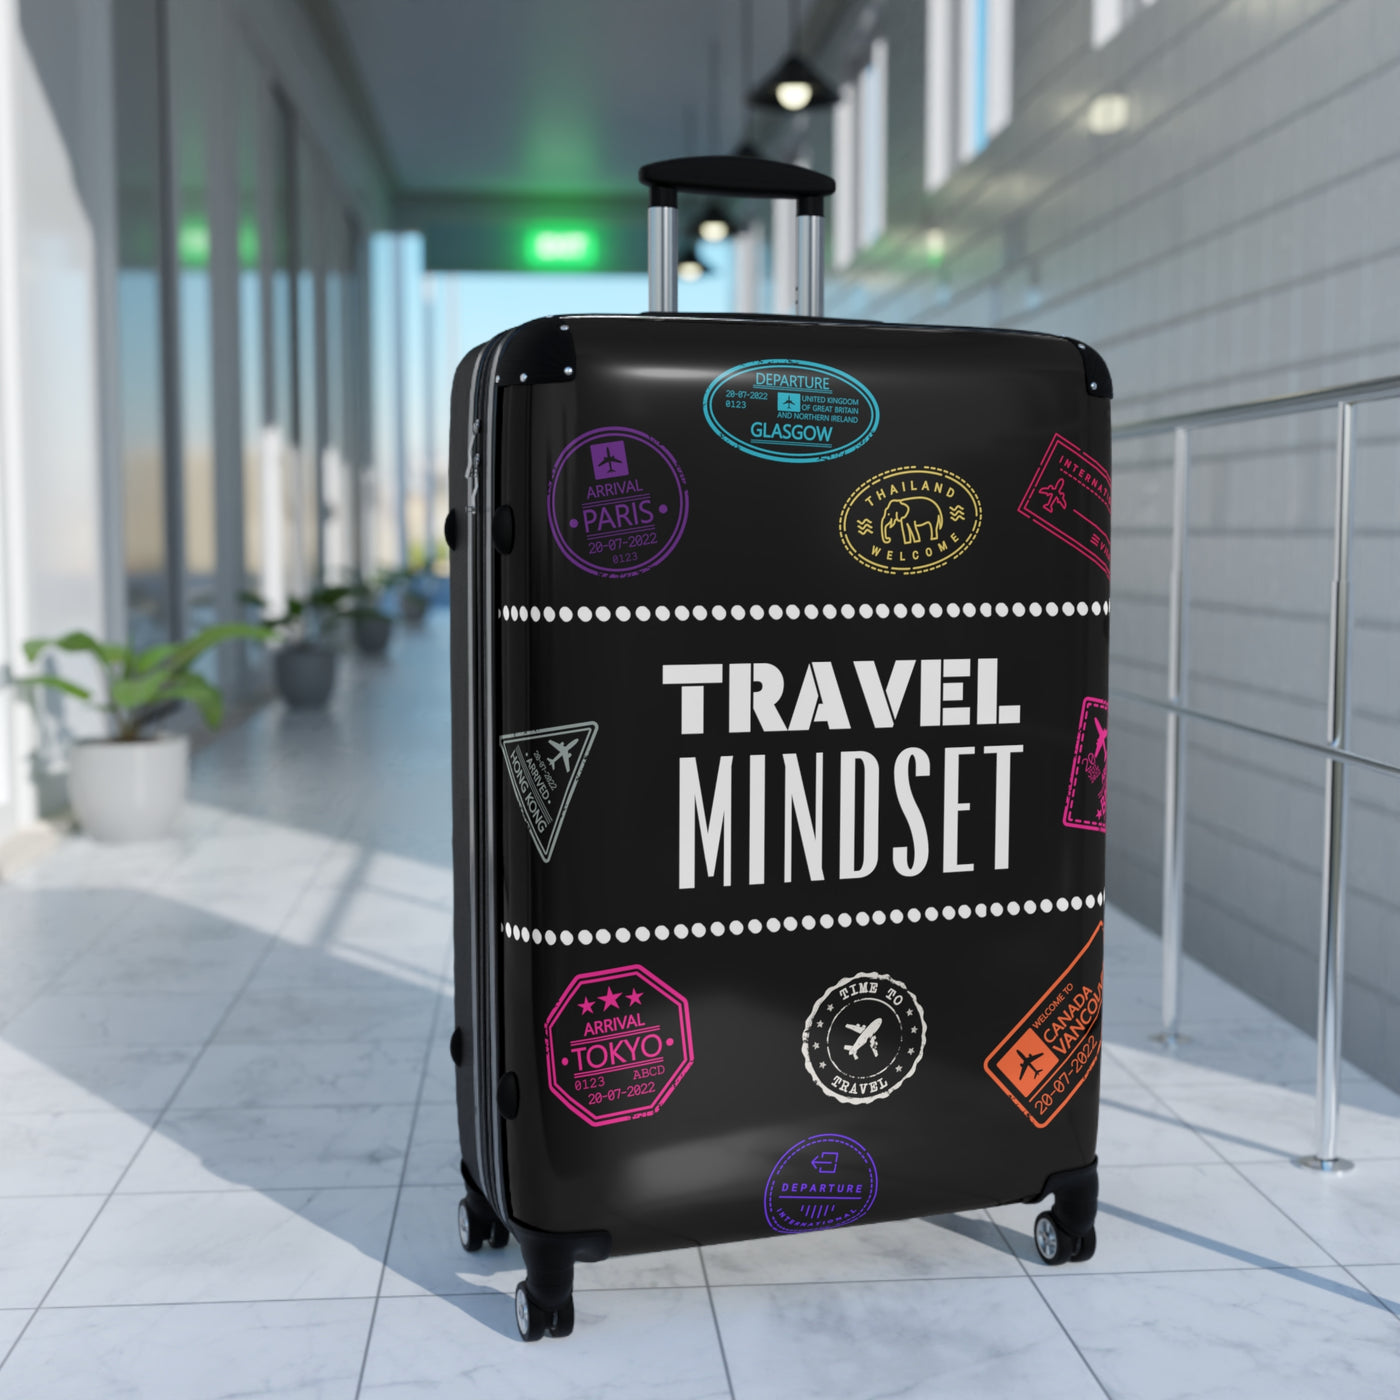 TRAVEL MINDSET Suitcase - 3 sizes